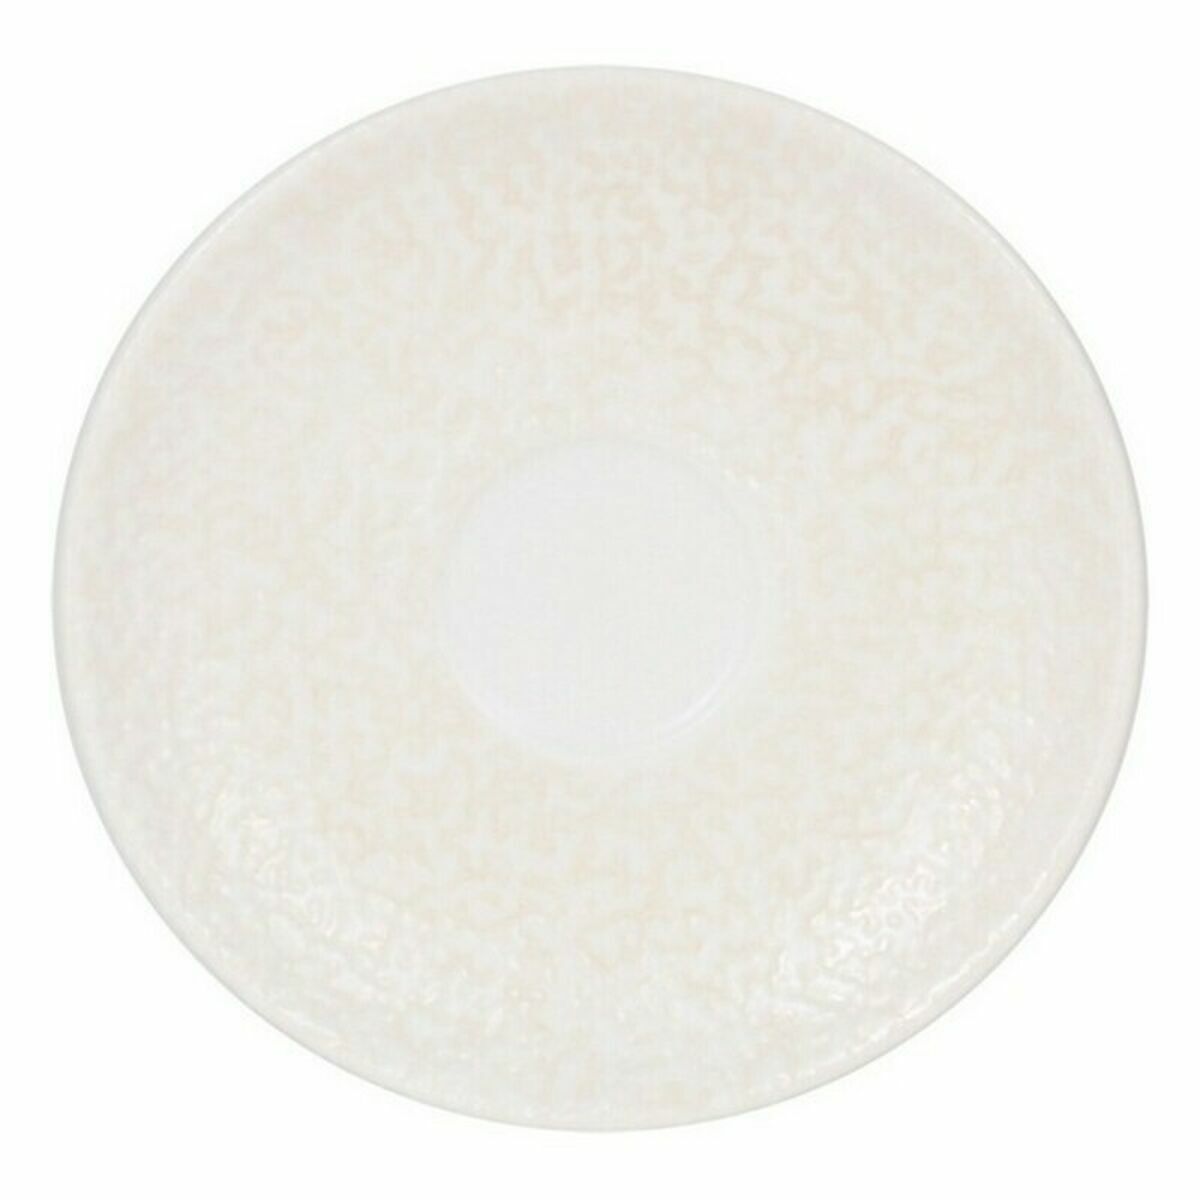 Assiette Inde Atelier Porcelaine Blanc Ø 12 cm (6 Unités) (ø 12 cm)